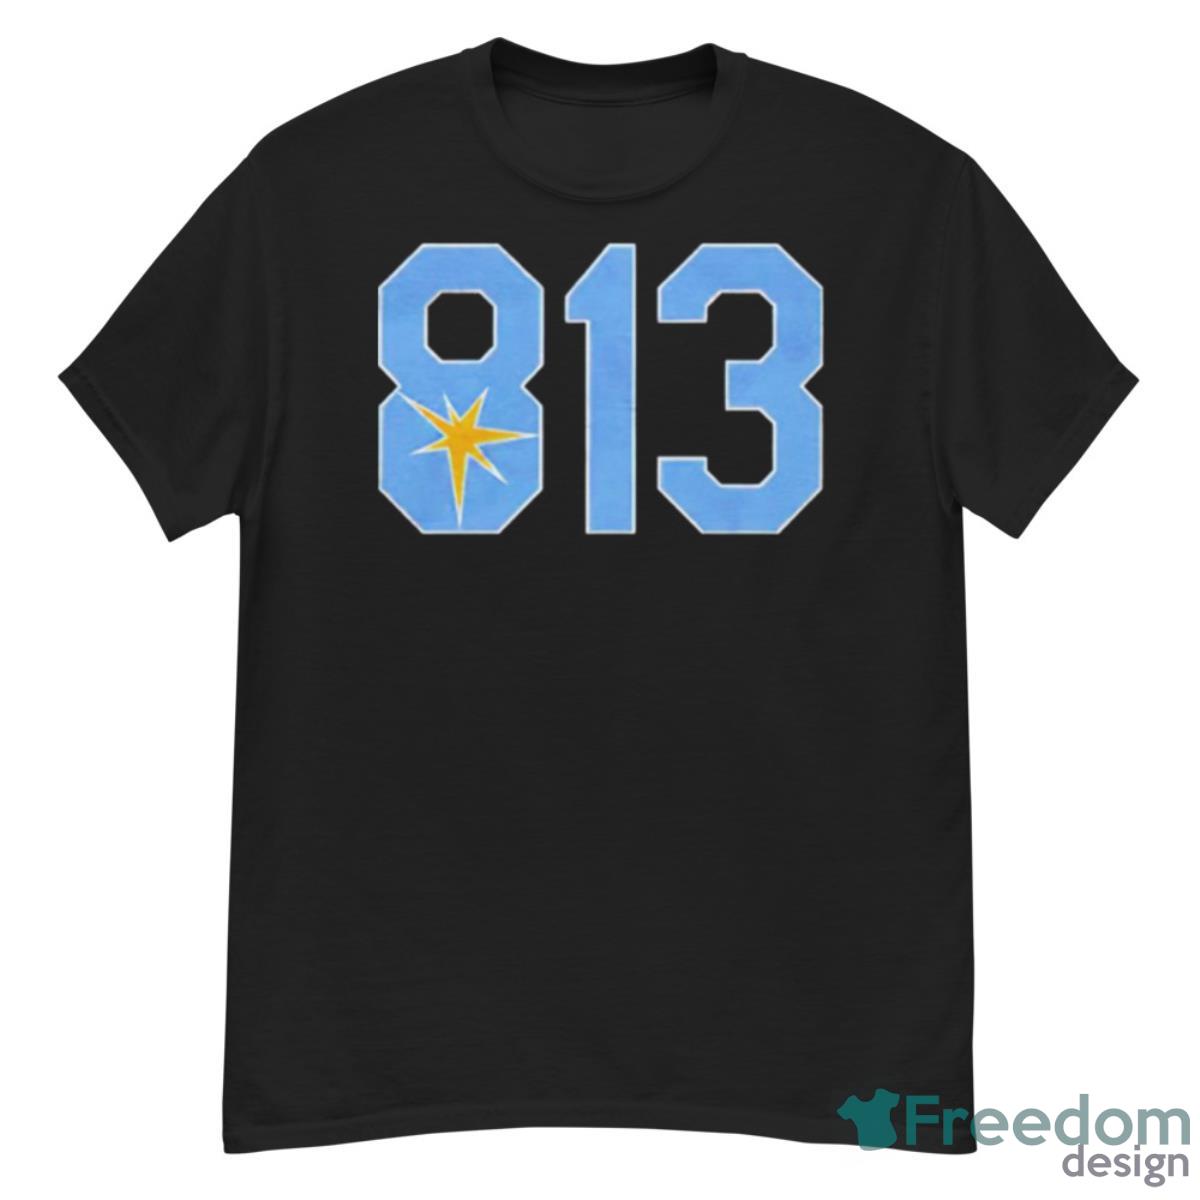 813 Tampa Bay Rays Shirt - Freedomdesign